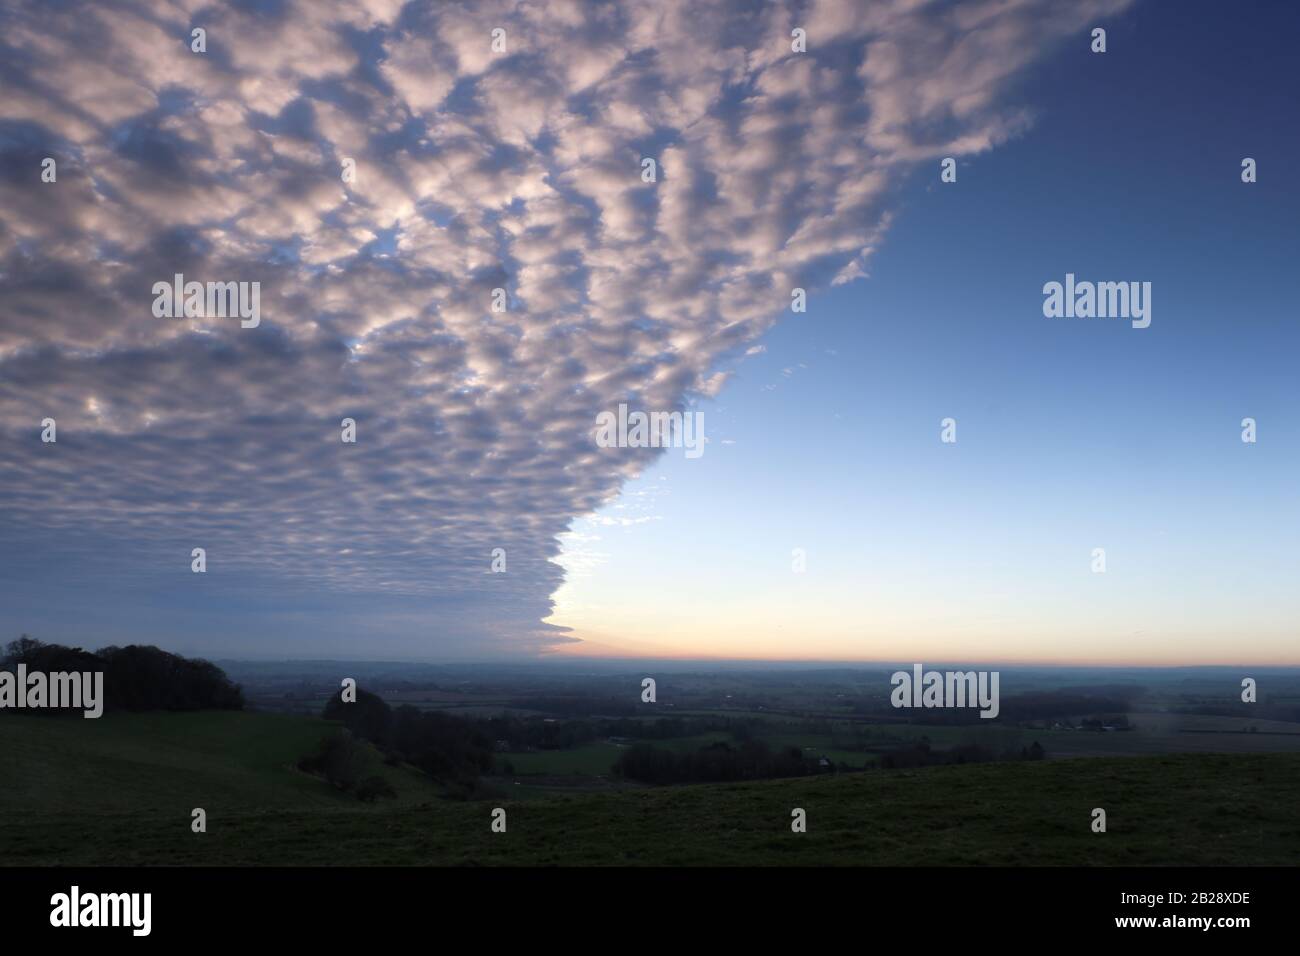 Une formation spectaculaire de nuages prise au soleil. Banque D'Images